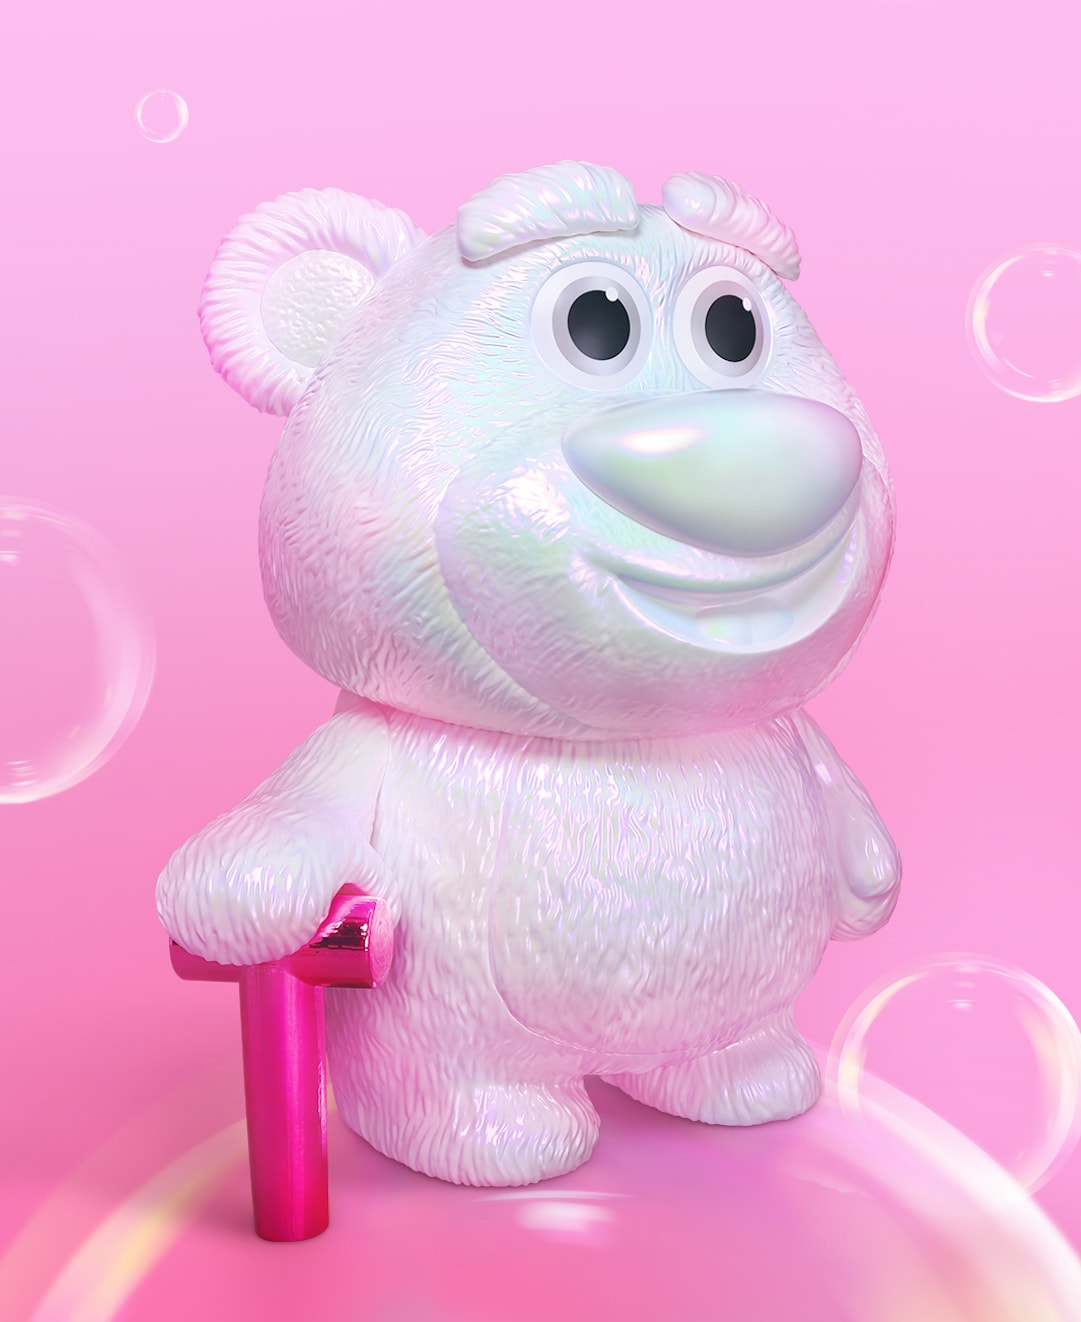 HEROCROSS 携手 Disney 与 Pixar 打造全新炫彩色版「草莓熊」Lotso 搪胶玩偶